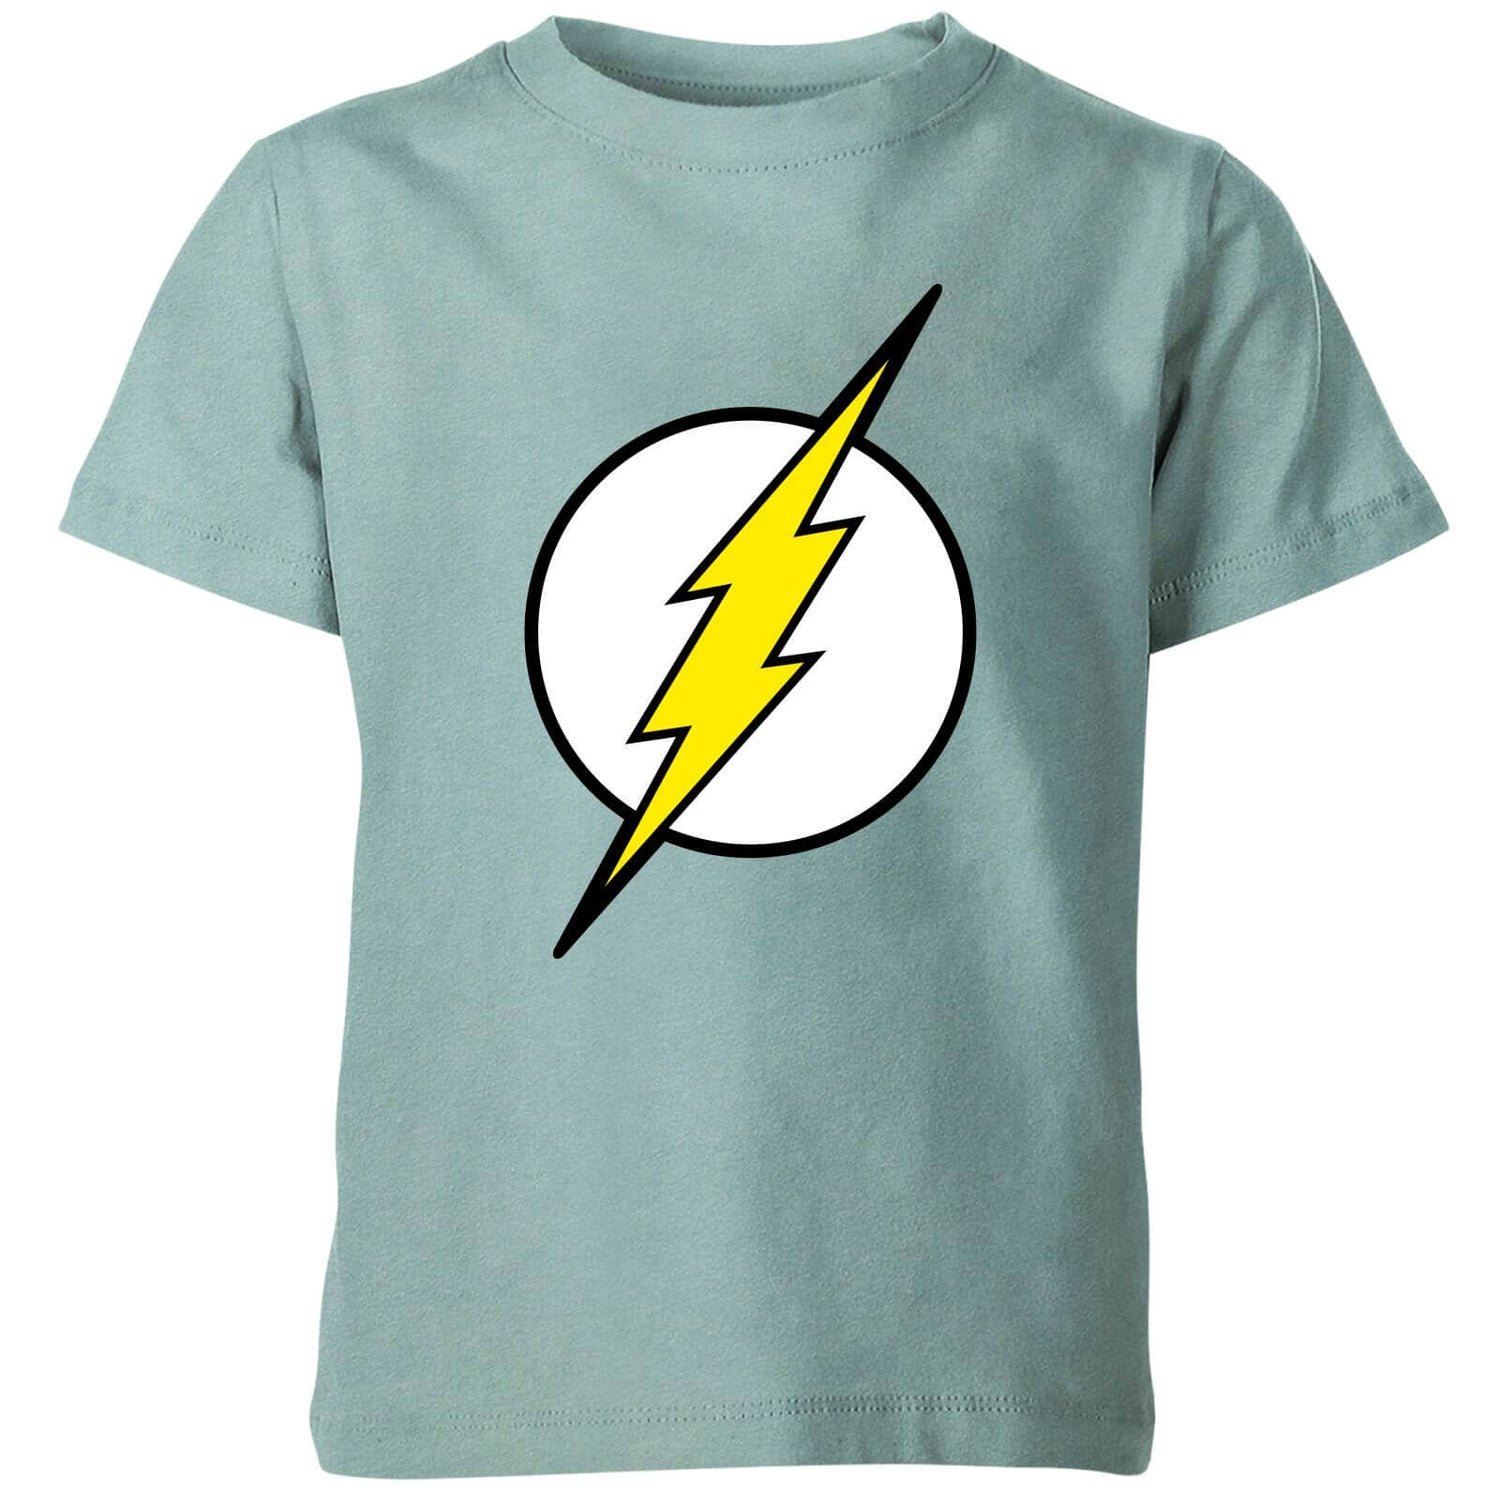 Justice League Flash Logo Kids' T-Shirt - Mint Acid Wash